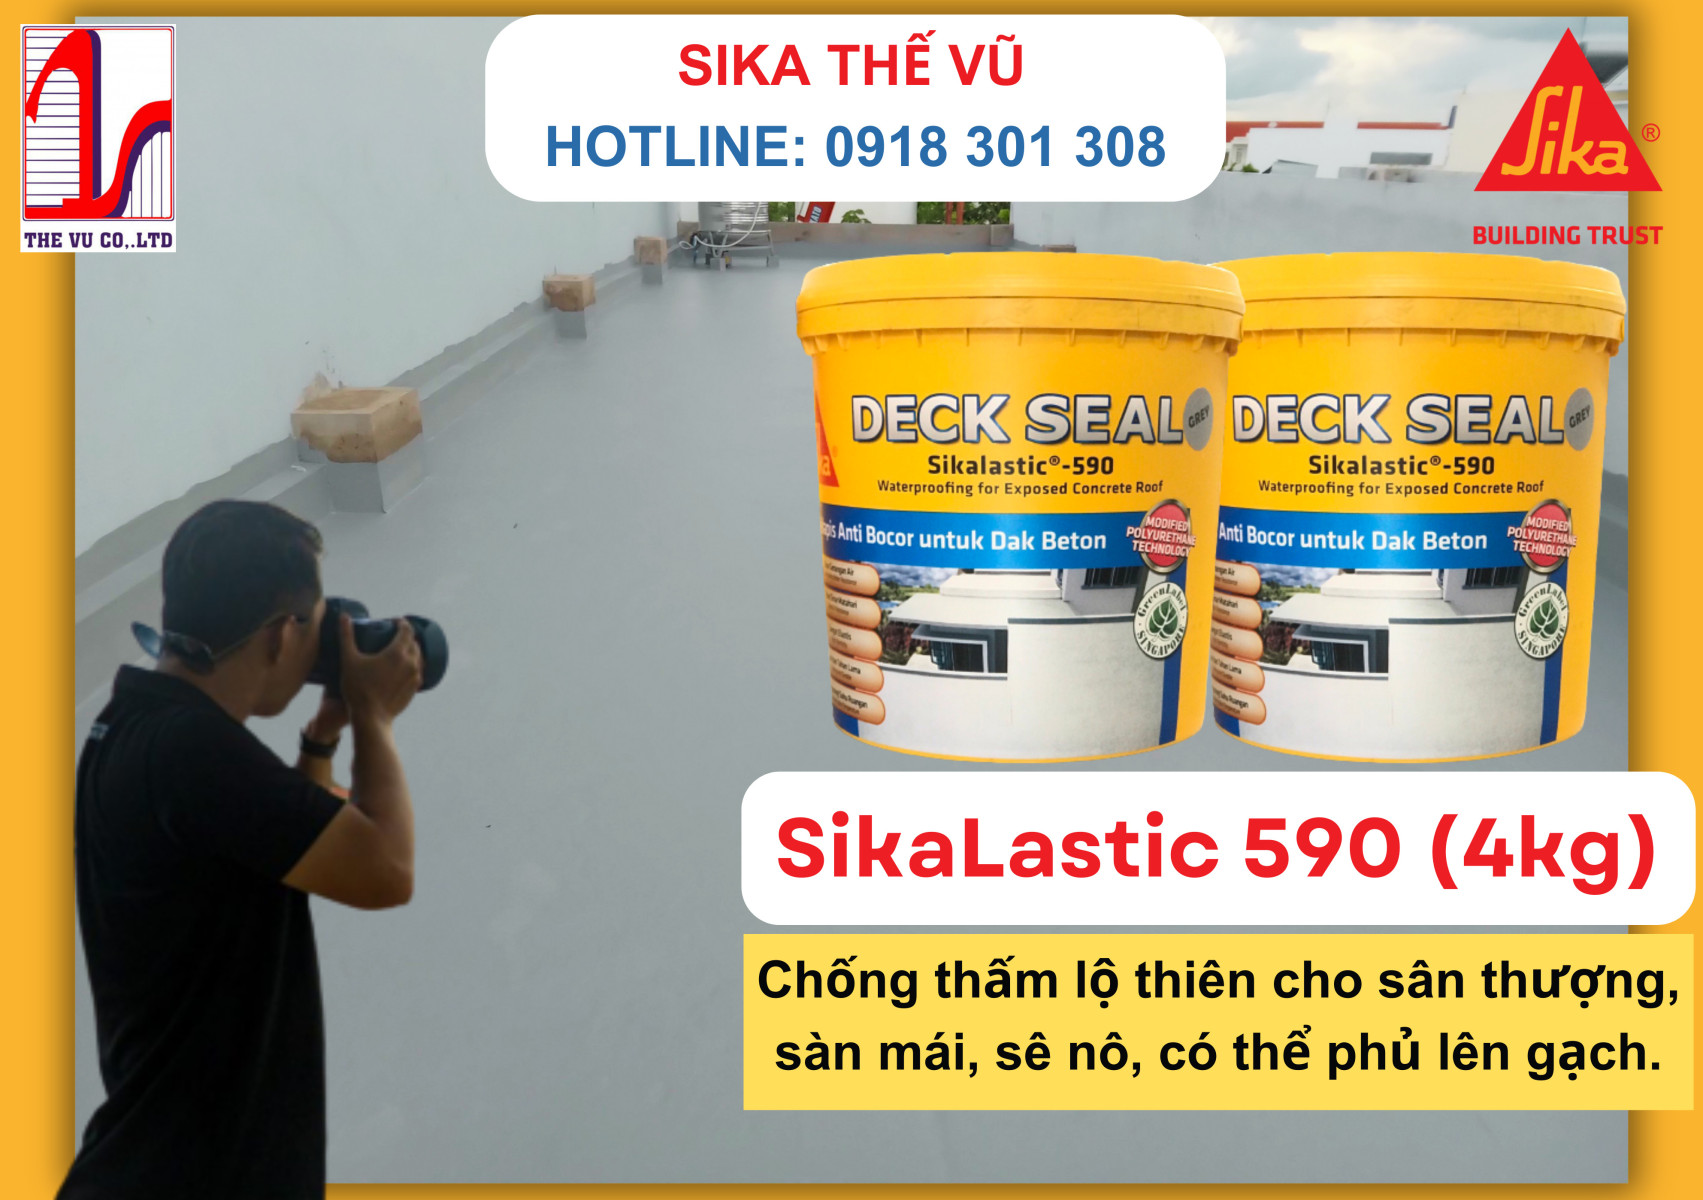 Hàng mới về Sikalastic 590 4Kg - Giải pháp chống thấm cho các máng xối nhỏ nhỏ, sàn mái, sân thượng lộ thiên